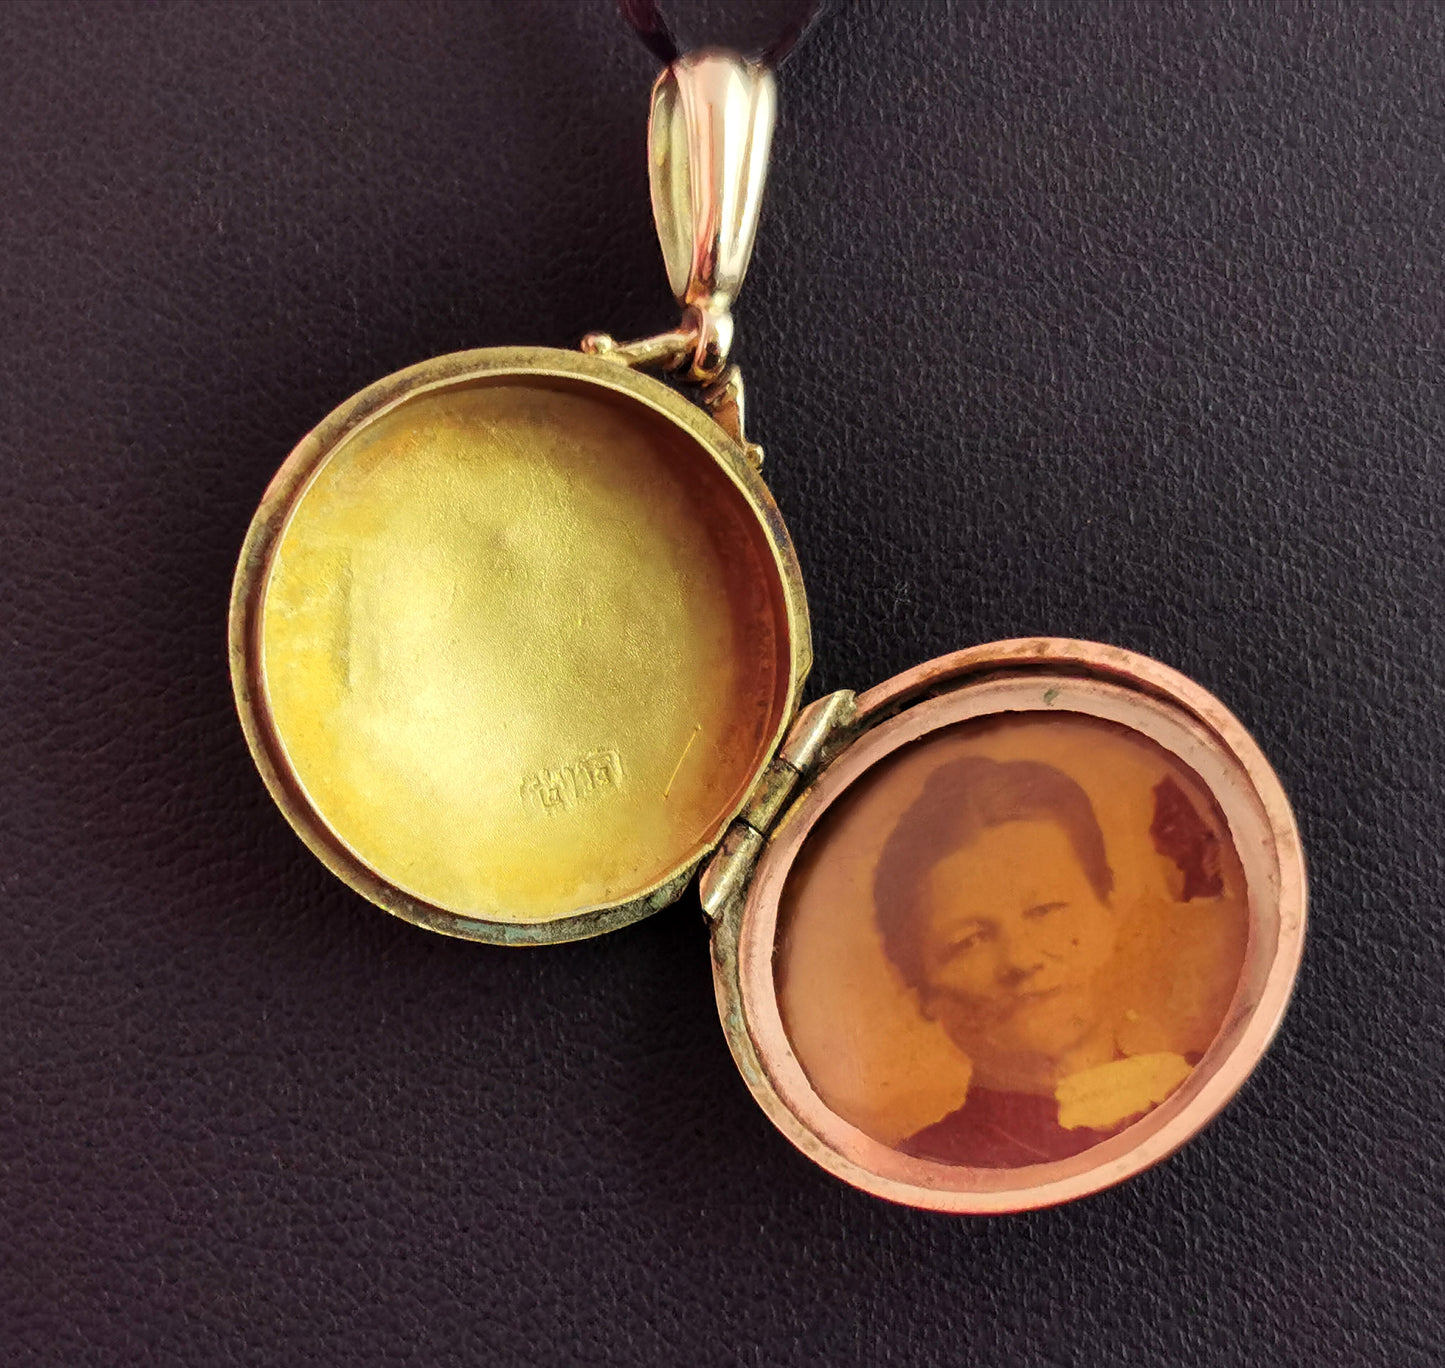 Antique 9ct gold locket pendant, 1910s